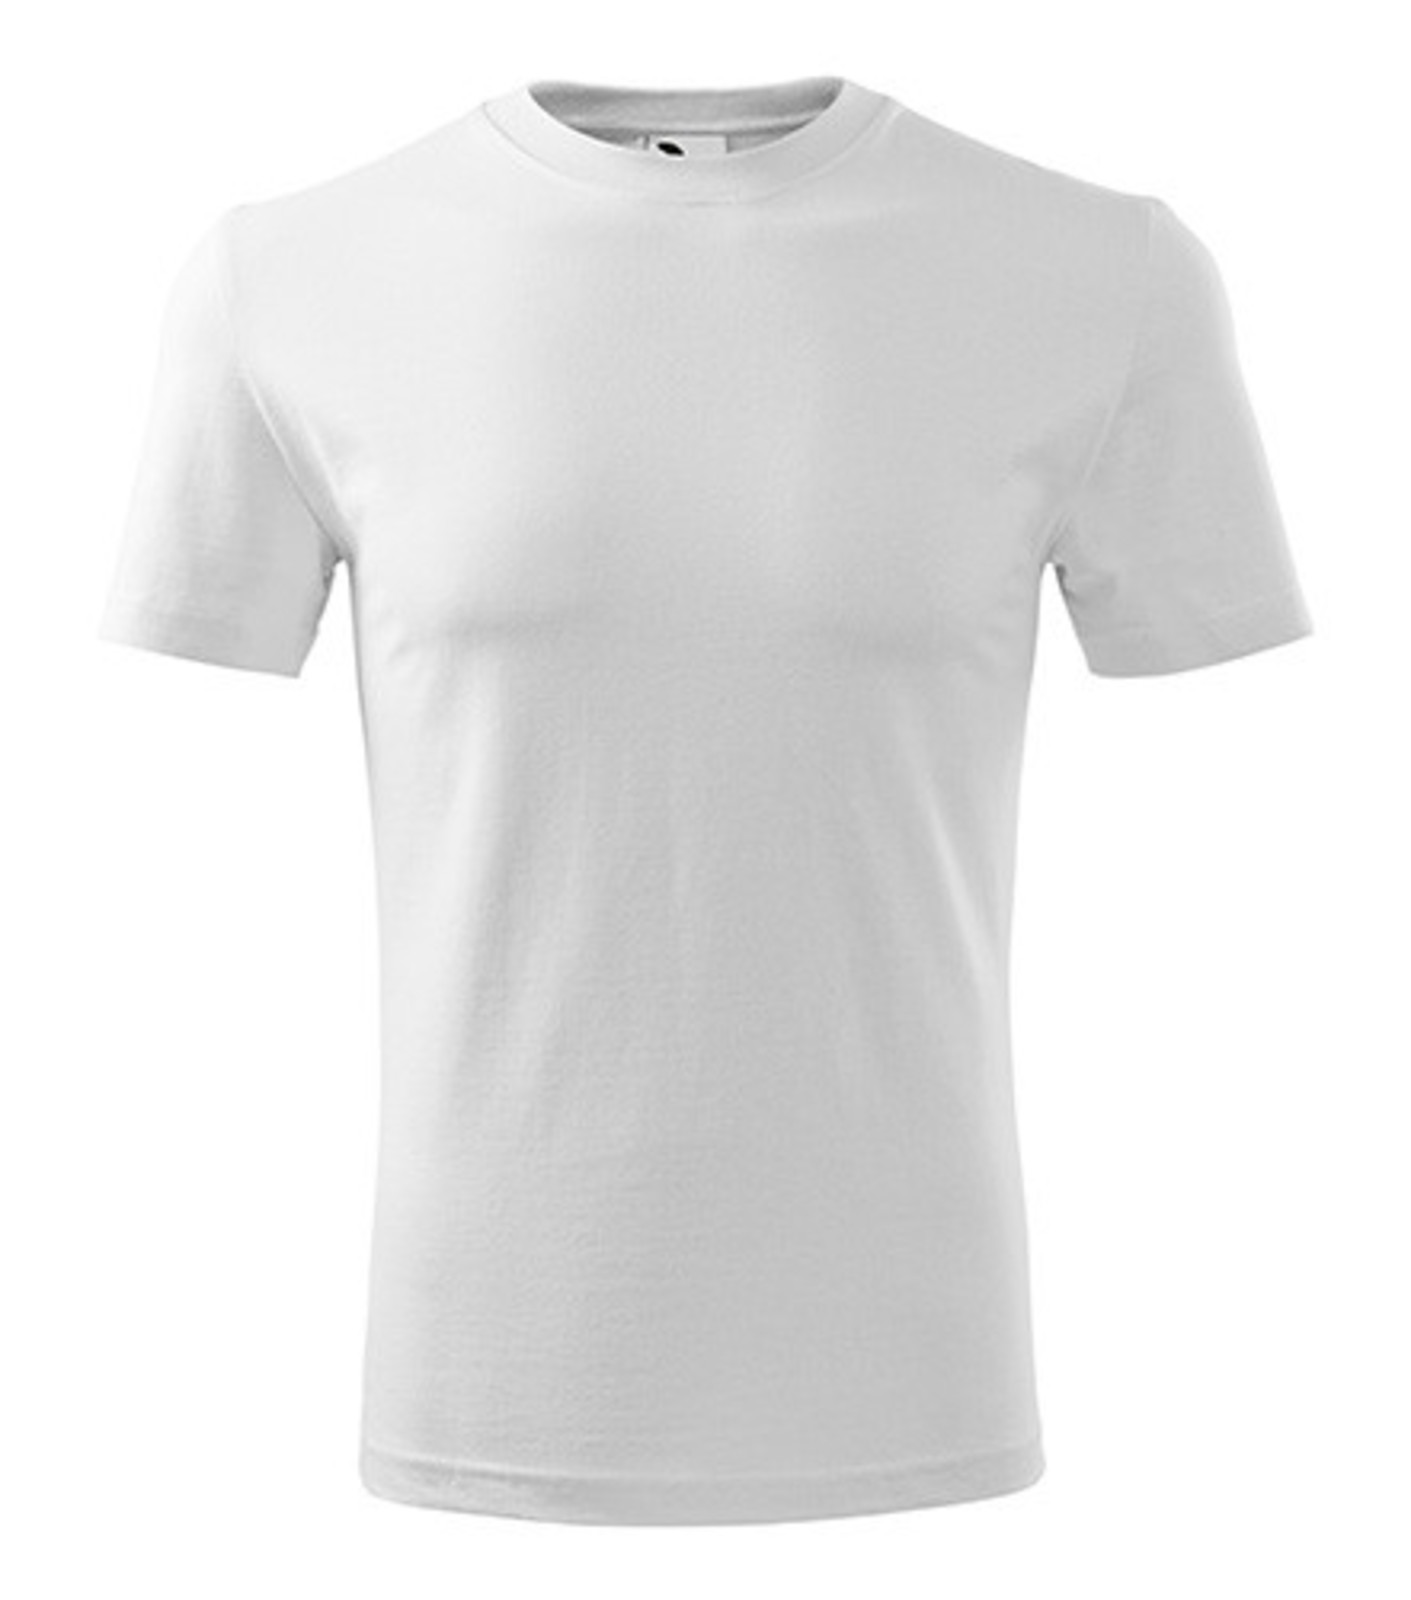 Pánske tričko Adler Classic New 132 - veľkosť: M, farba: biela